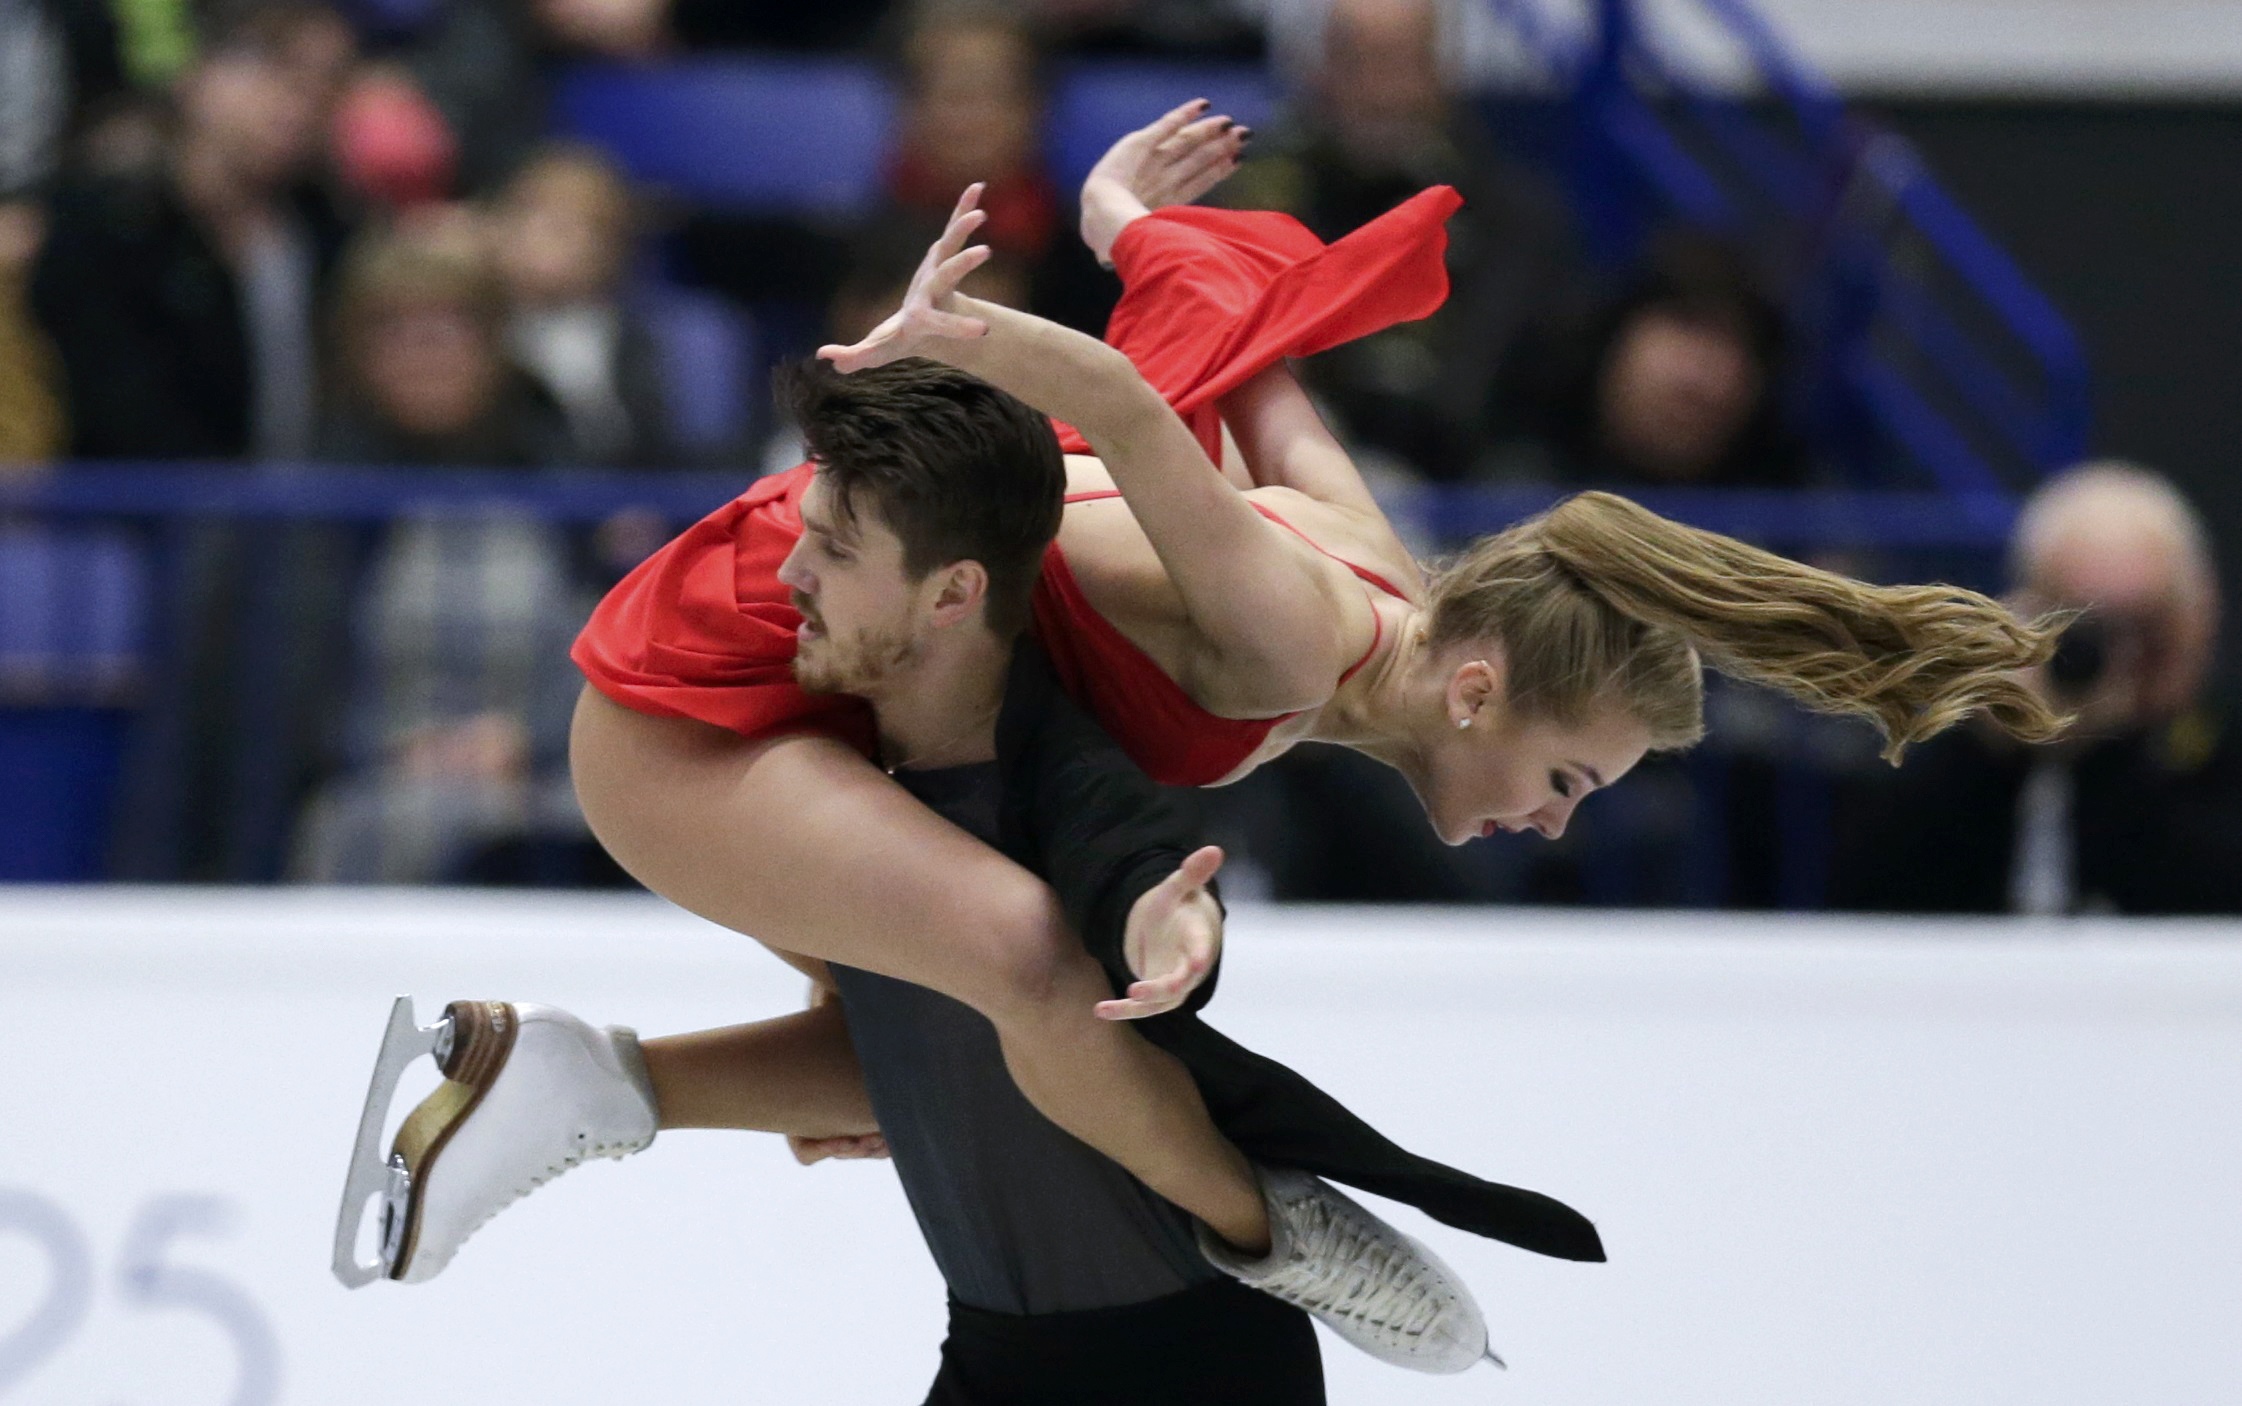 بطولة كأس الأمم الأوروبية 2017 للرقص الحر على الجليد (6)